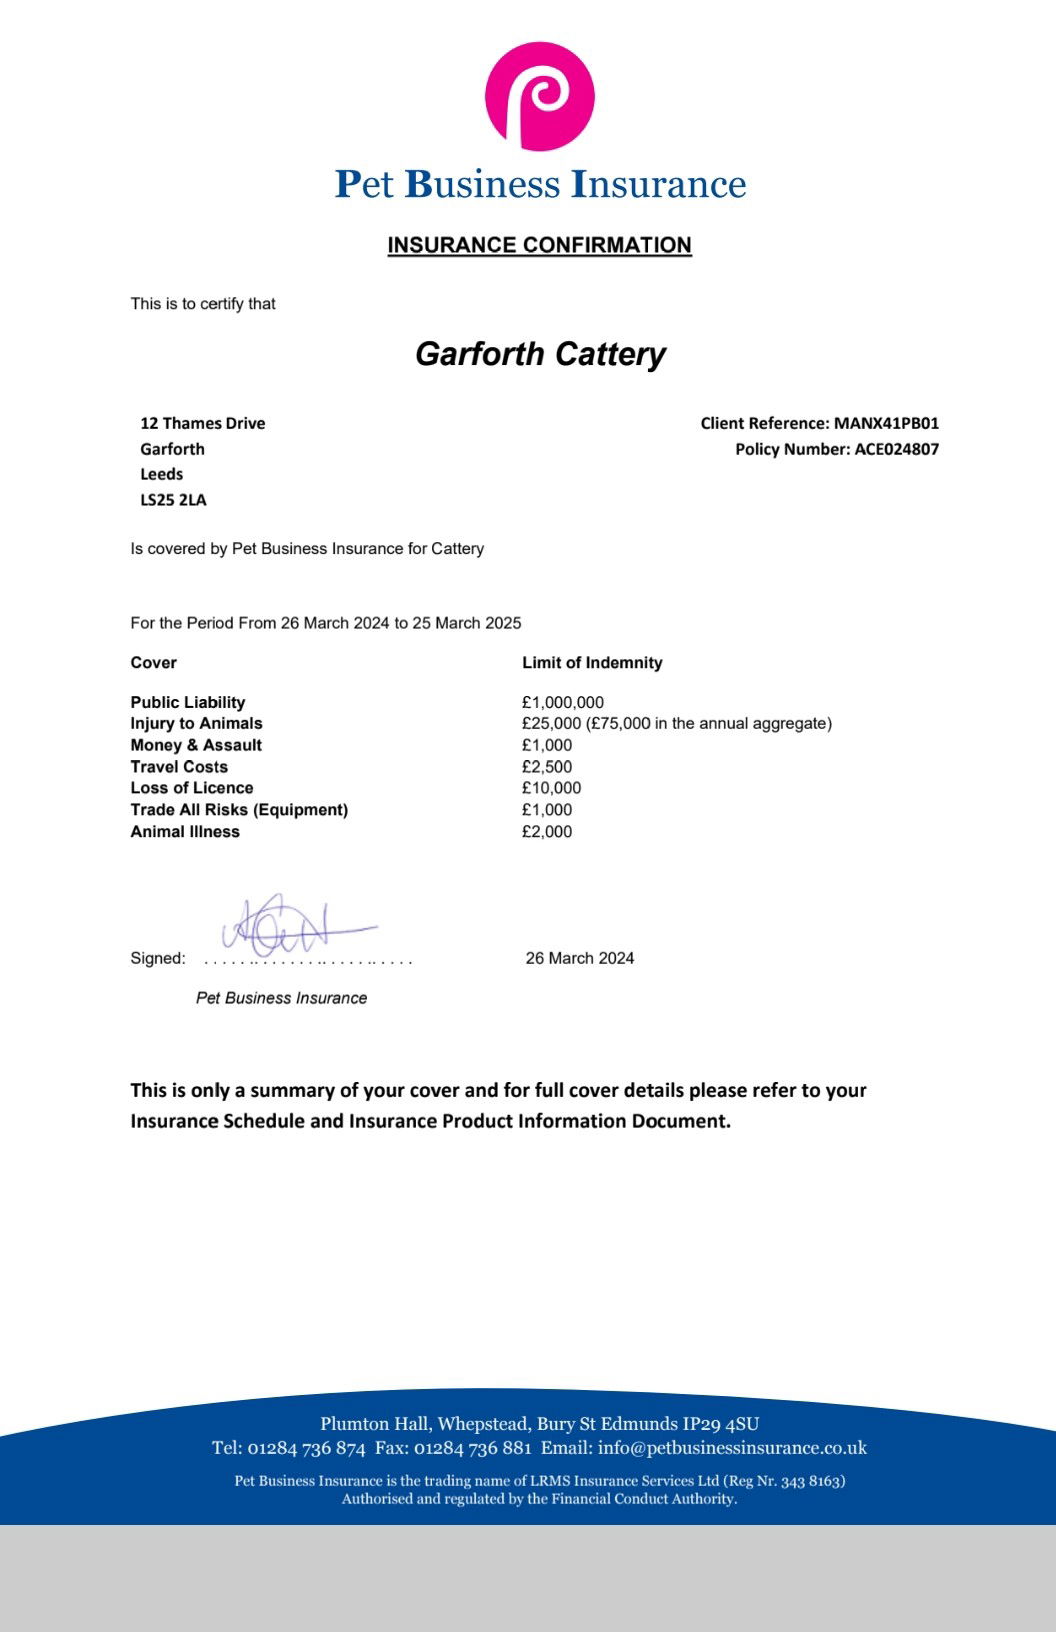 Garforth cattery Garforth catteries